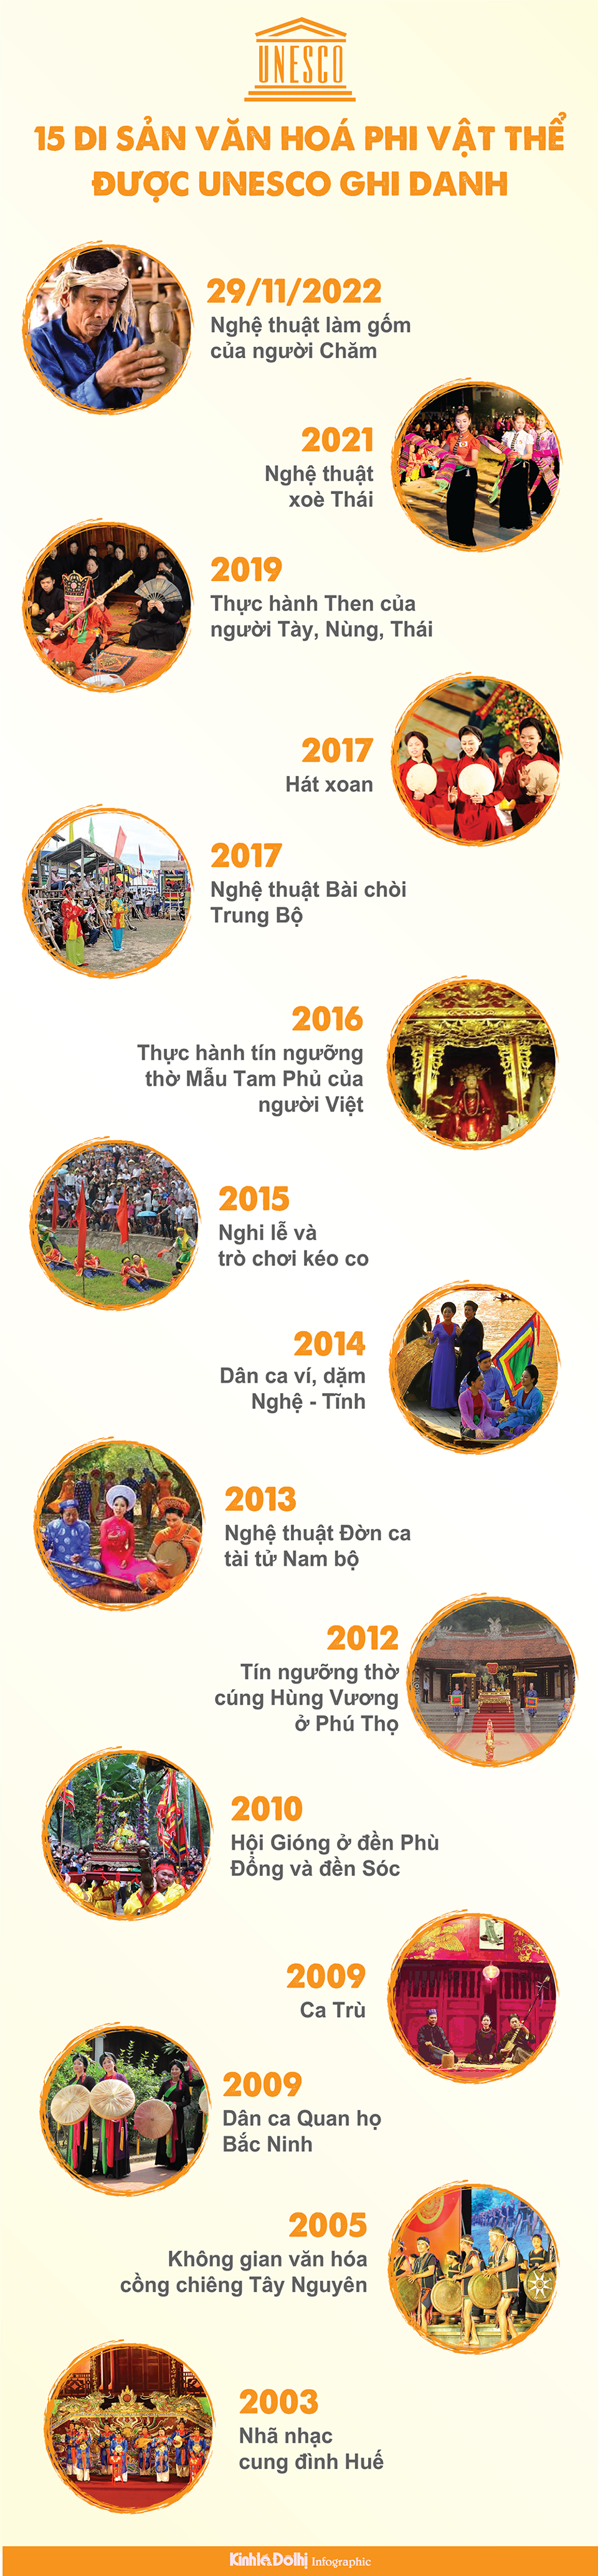 15 di sản văn hóa phi vật thể của Việt Nam được UNESCO ghi danh - Ảnh 1